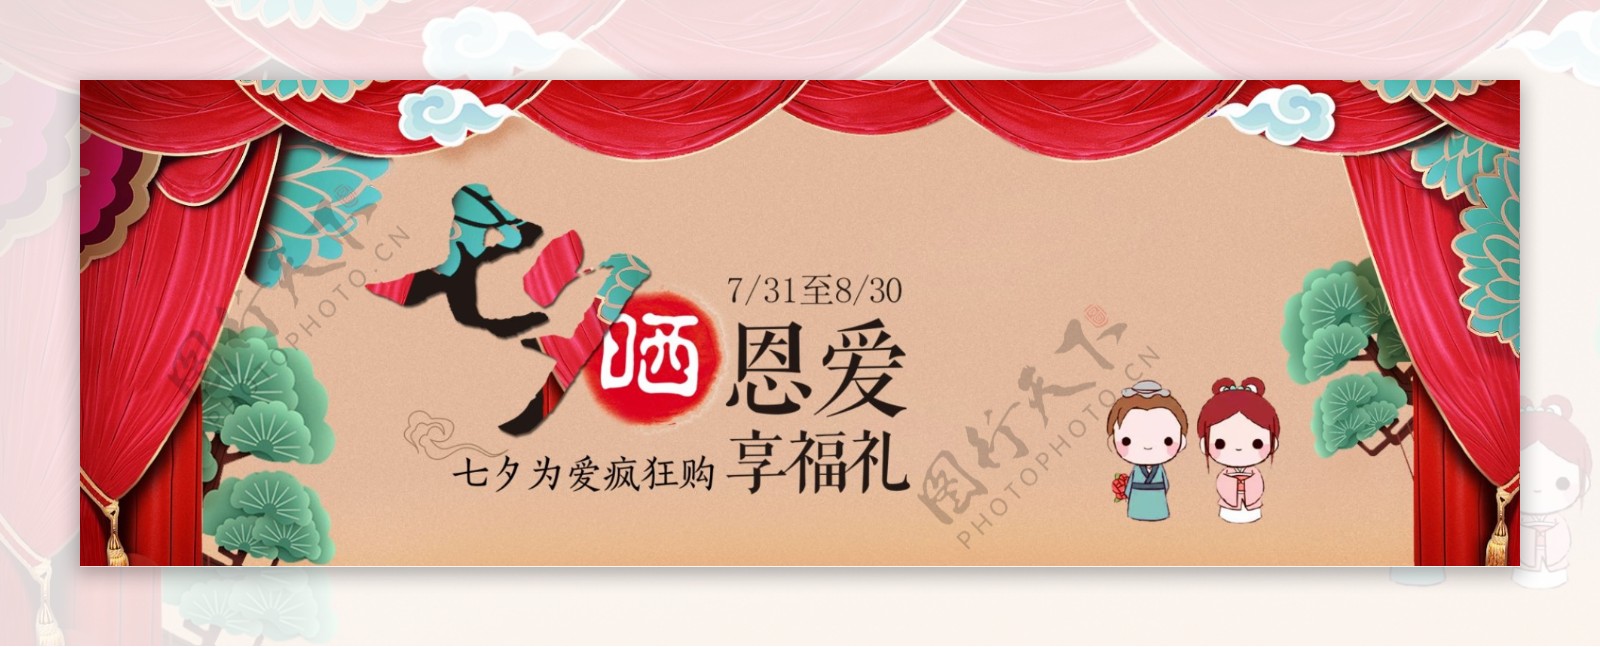 电商天猫淘宝七夕情人节中国风促销海报banner模板设计